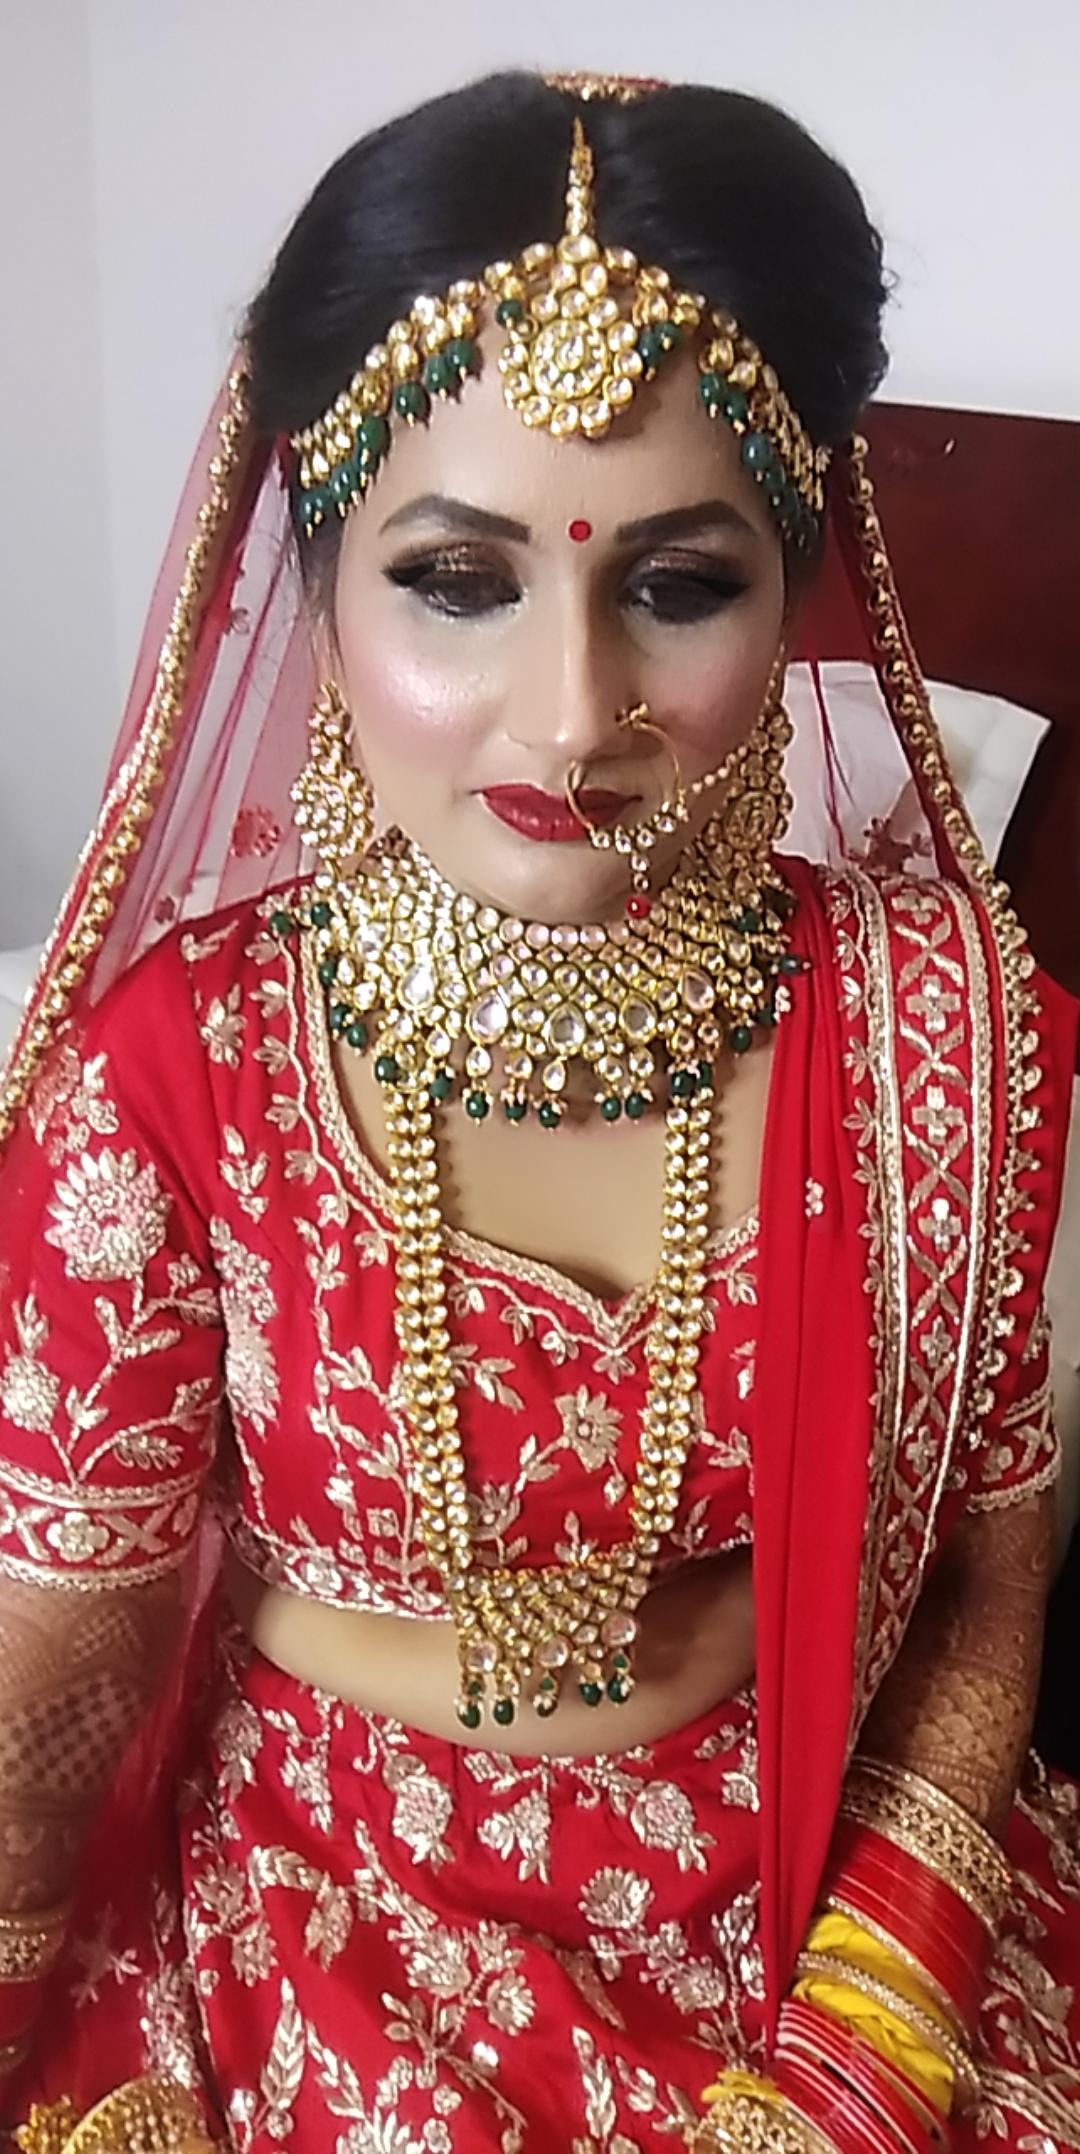 tina-makeup-artist-delhi-ncr